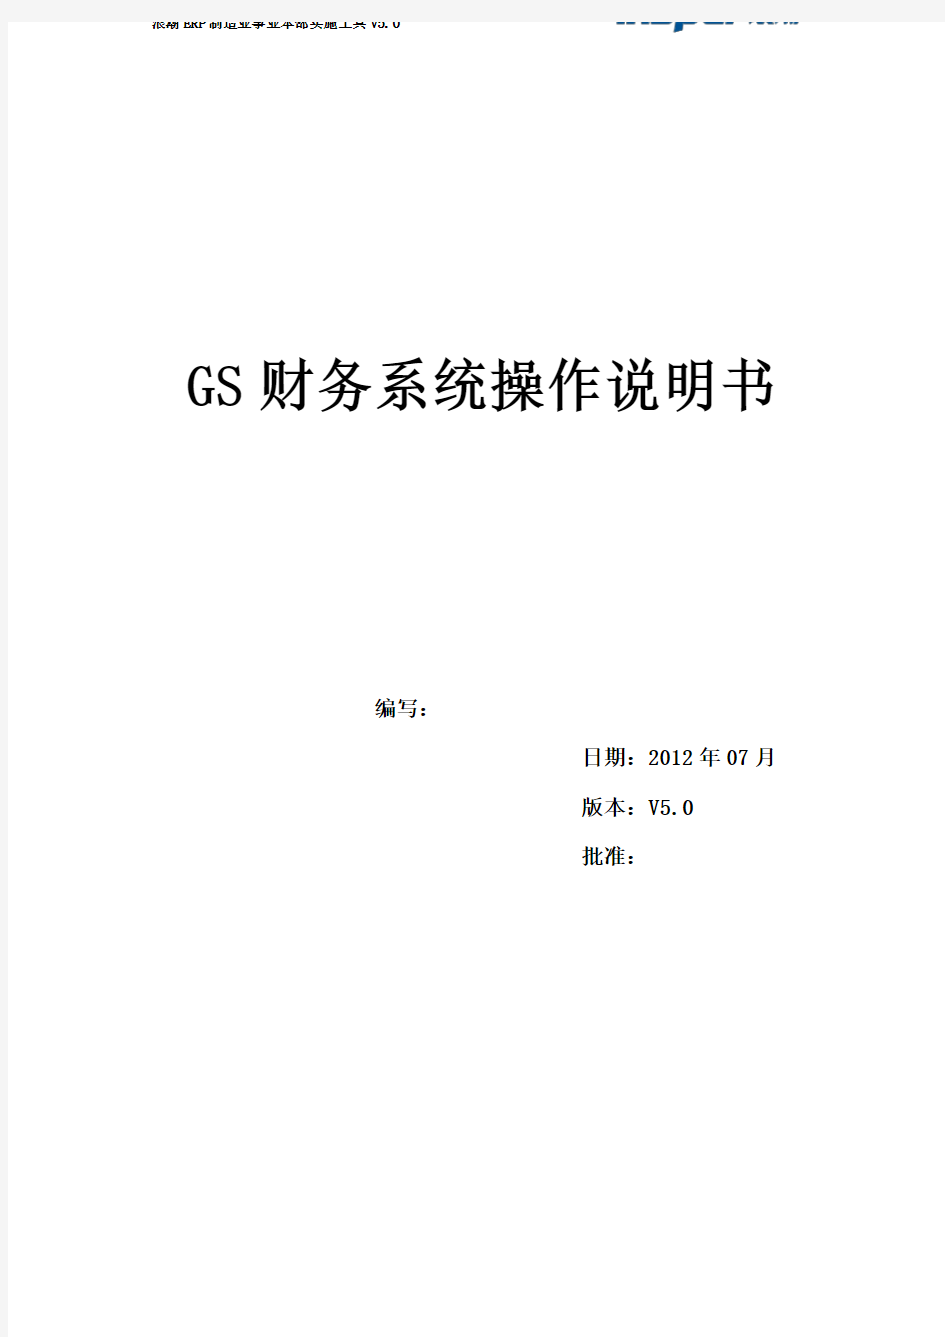 GS财务系统操作说明书(管理员)